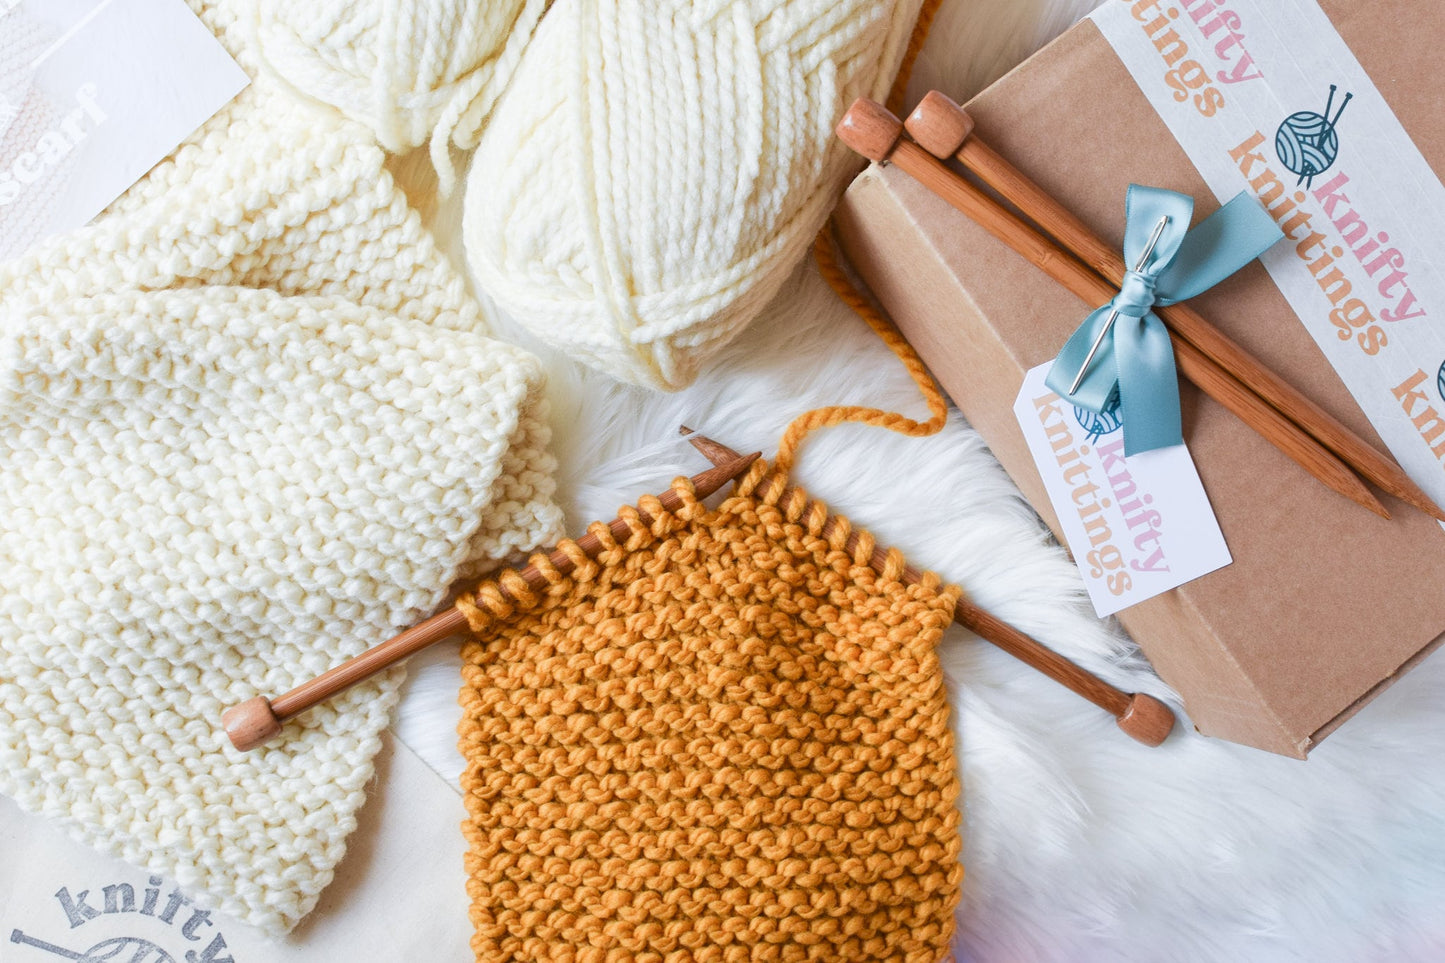  NGHTMRKT Scarf Knitting Kit for Beginners Adults